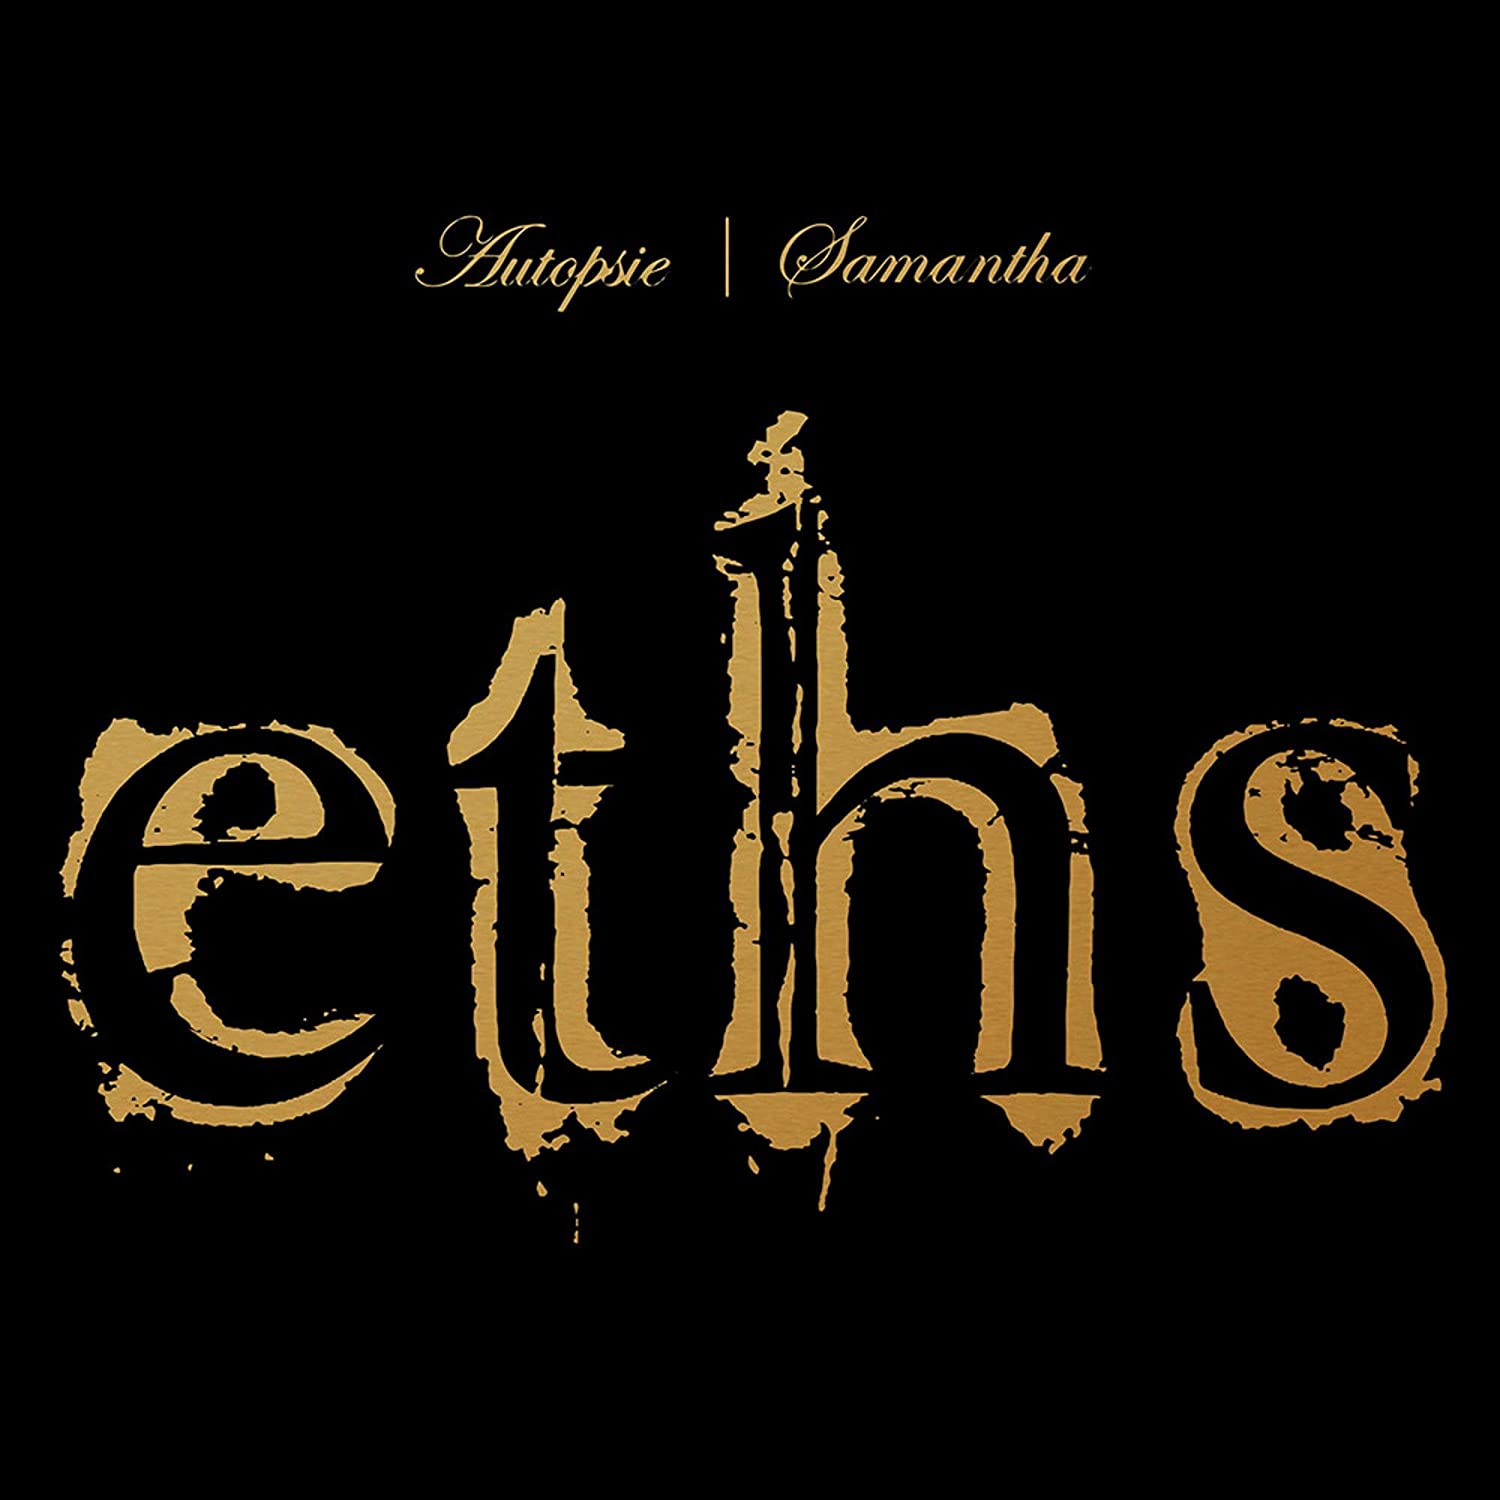 Eths - Autopsie/Samantha 2CD